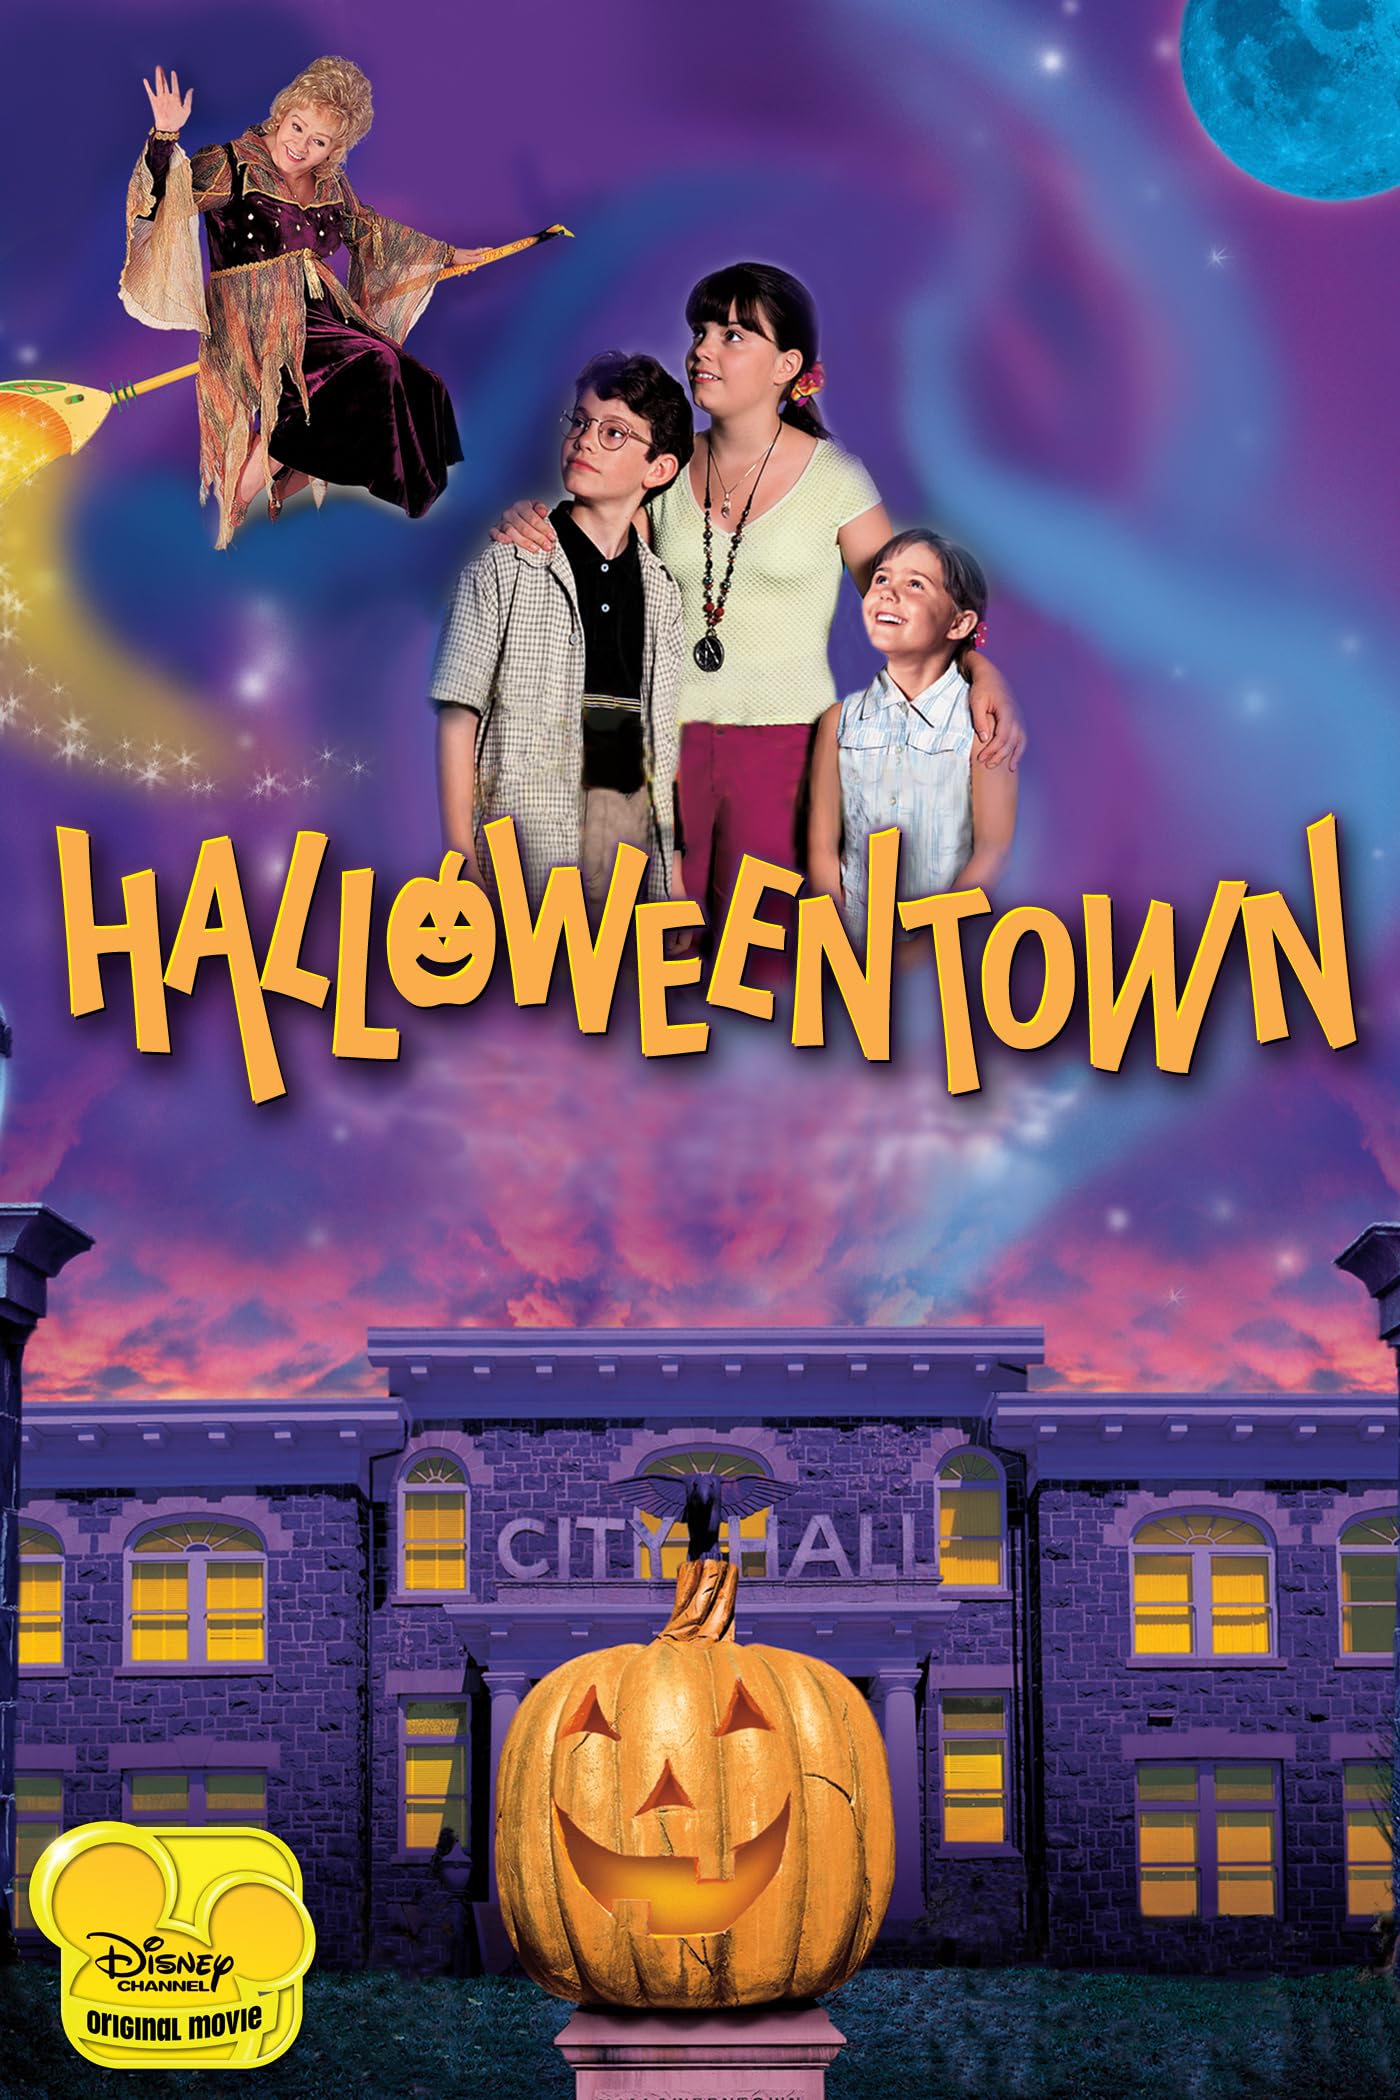 Halloweentown - (1998 movie) image